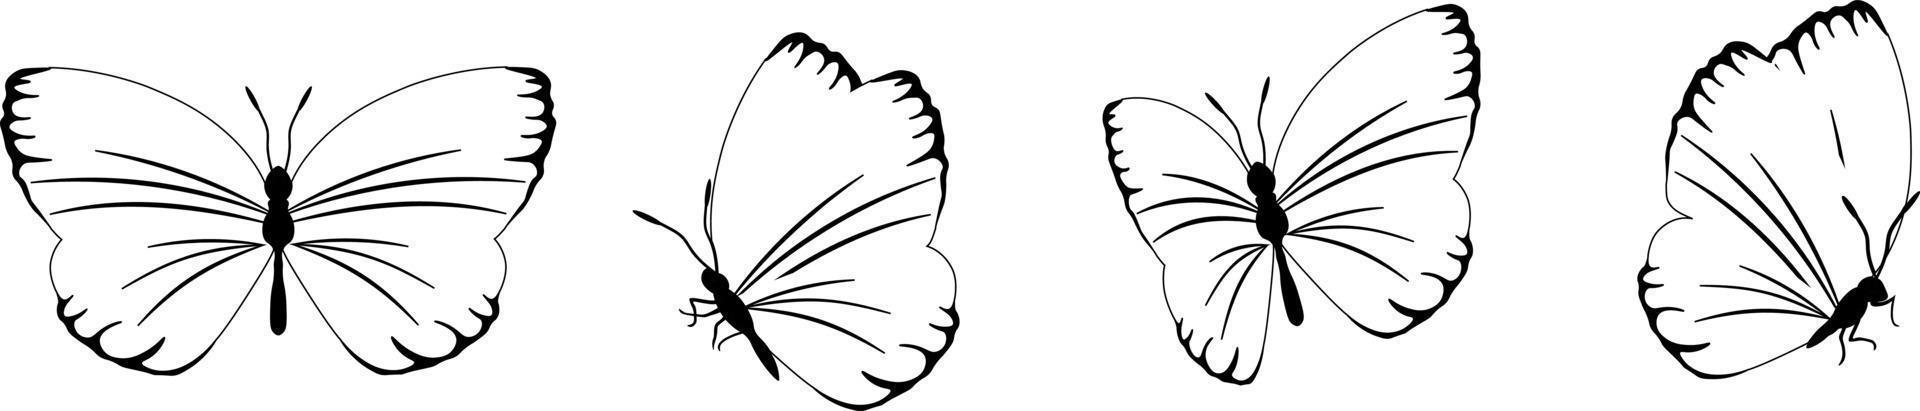 mariposa silueta en 4 4 opciones vector en aislado antecedentes